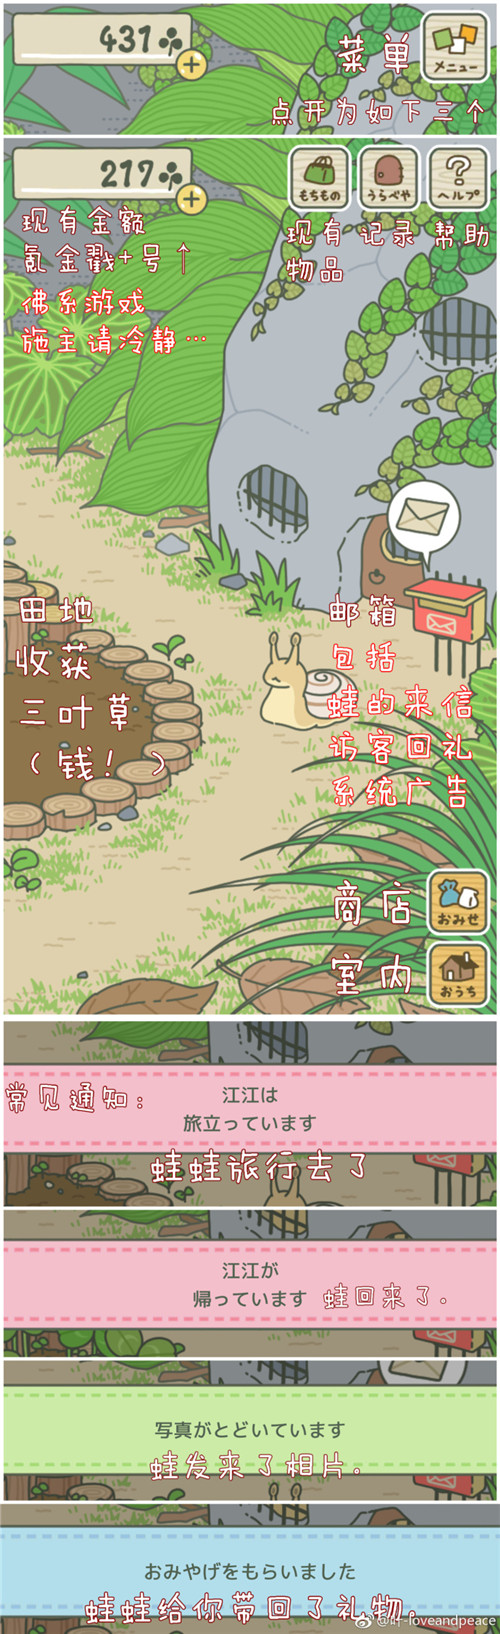 旅行青蛙苹果版怎么把语言设置成中文介绍